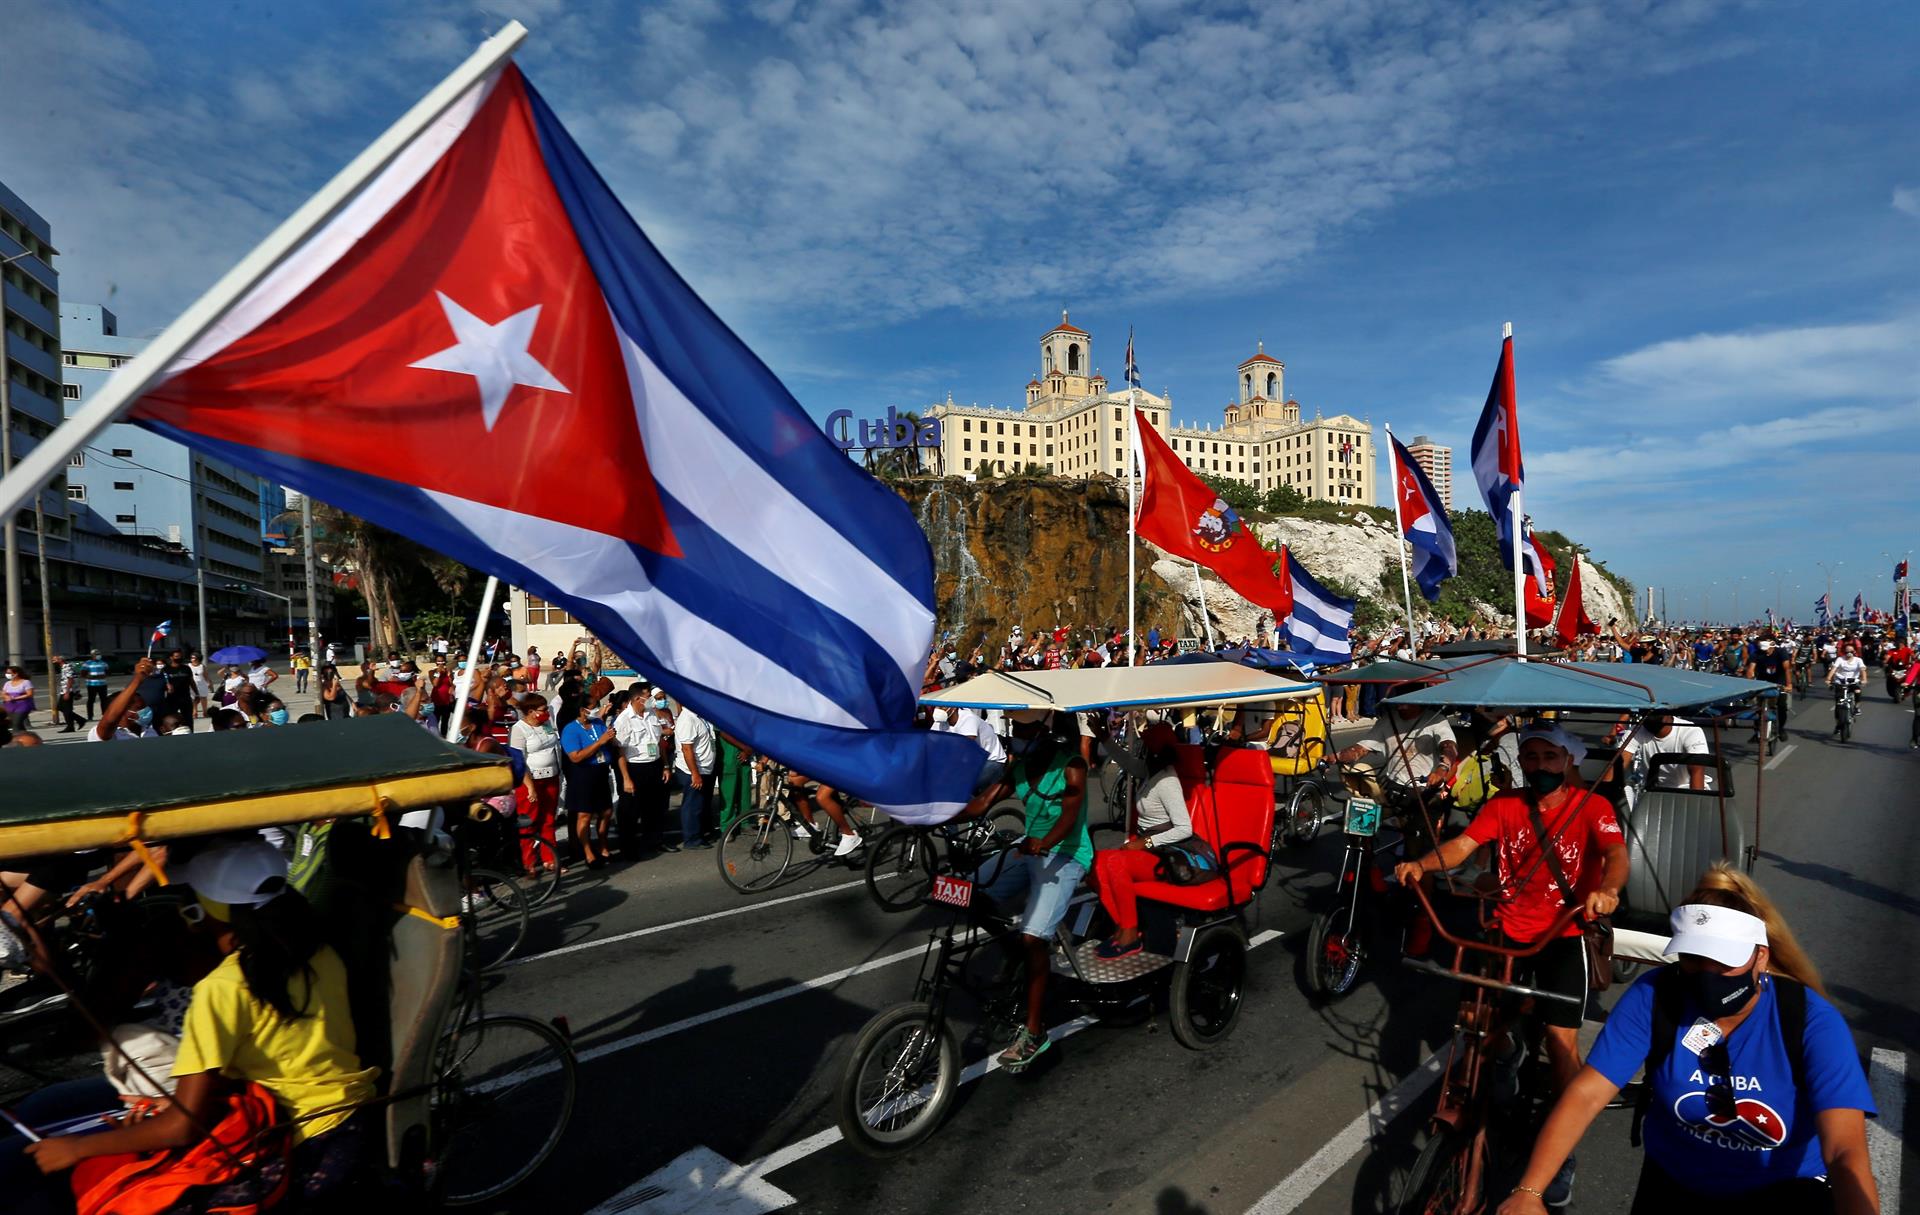 Protestas en Cuba: Parecido a lo que pasa en Venezuela y una evidente “brecha generacional” a favor del cambio